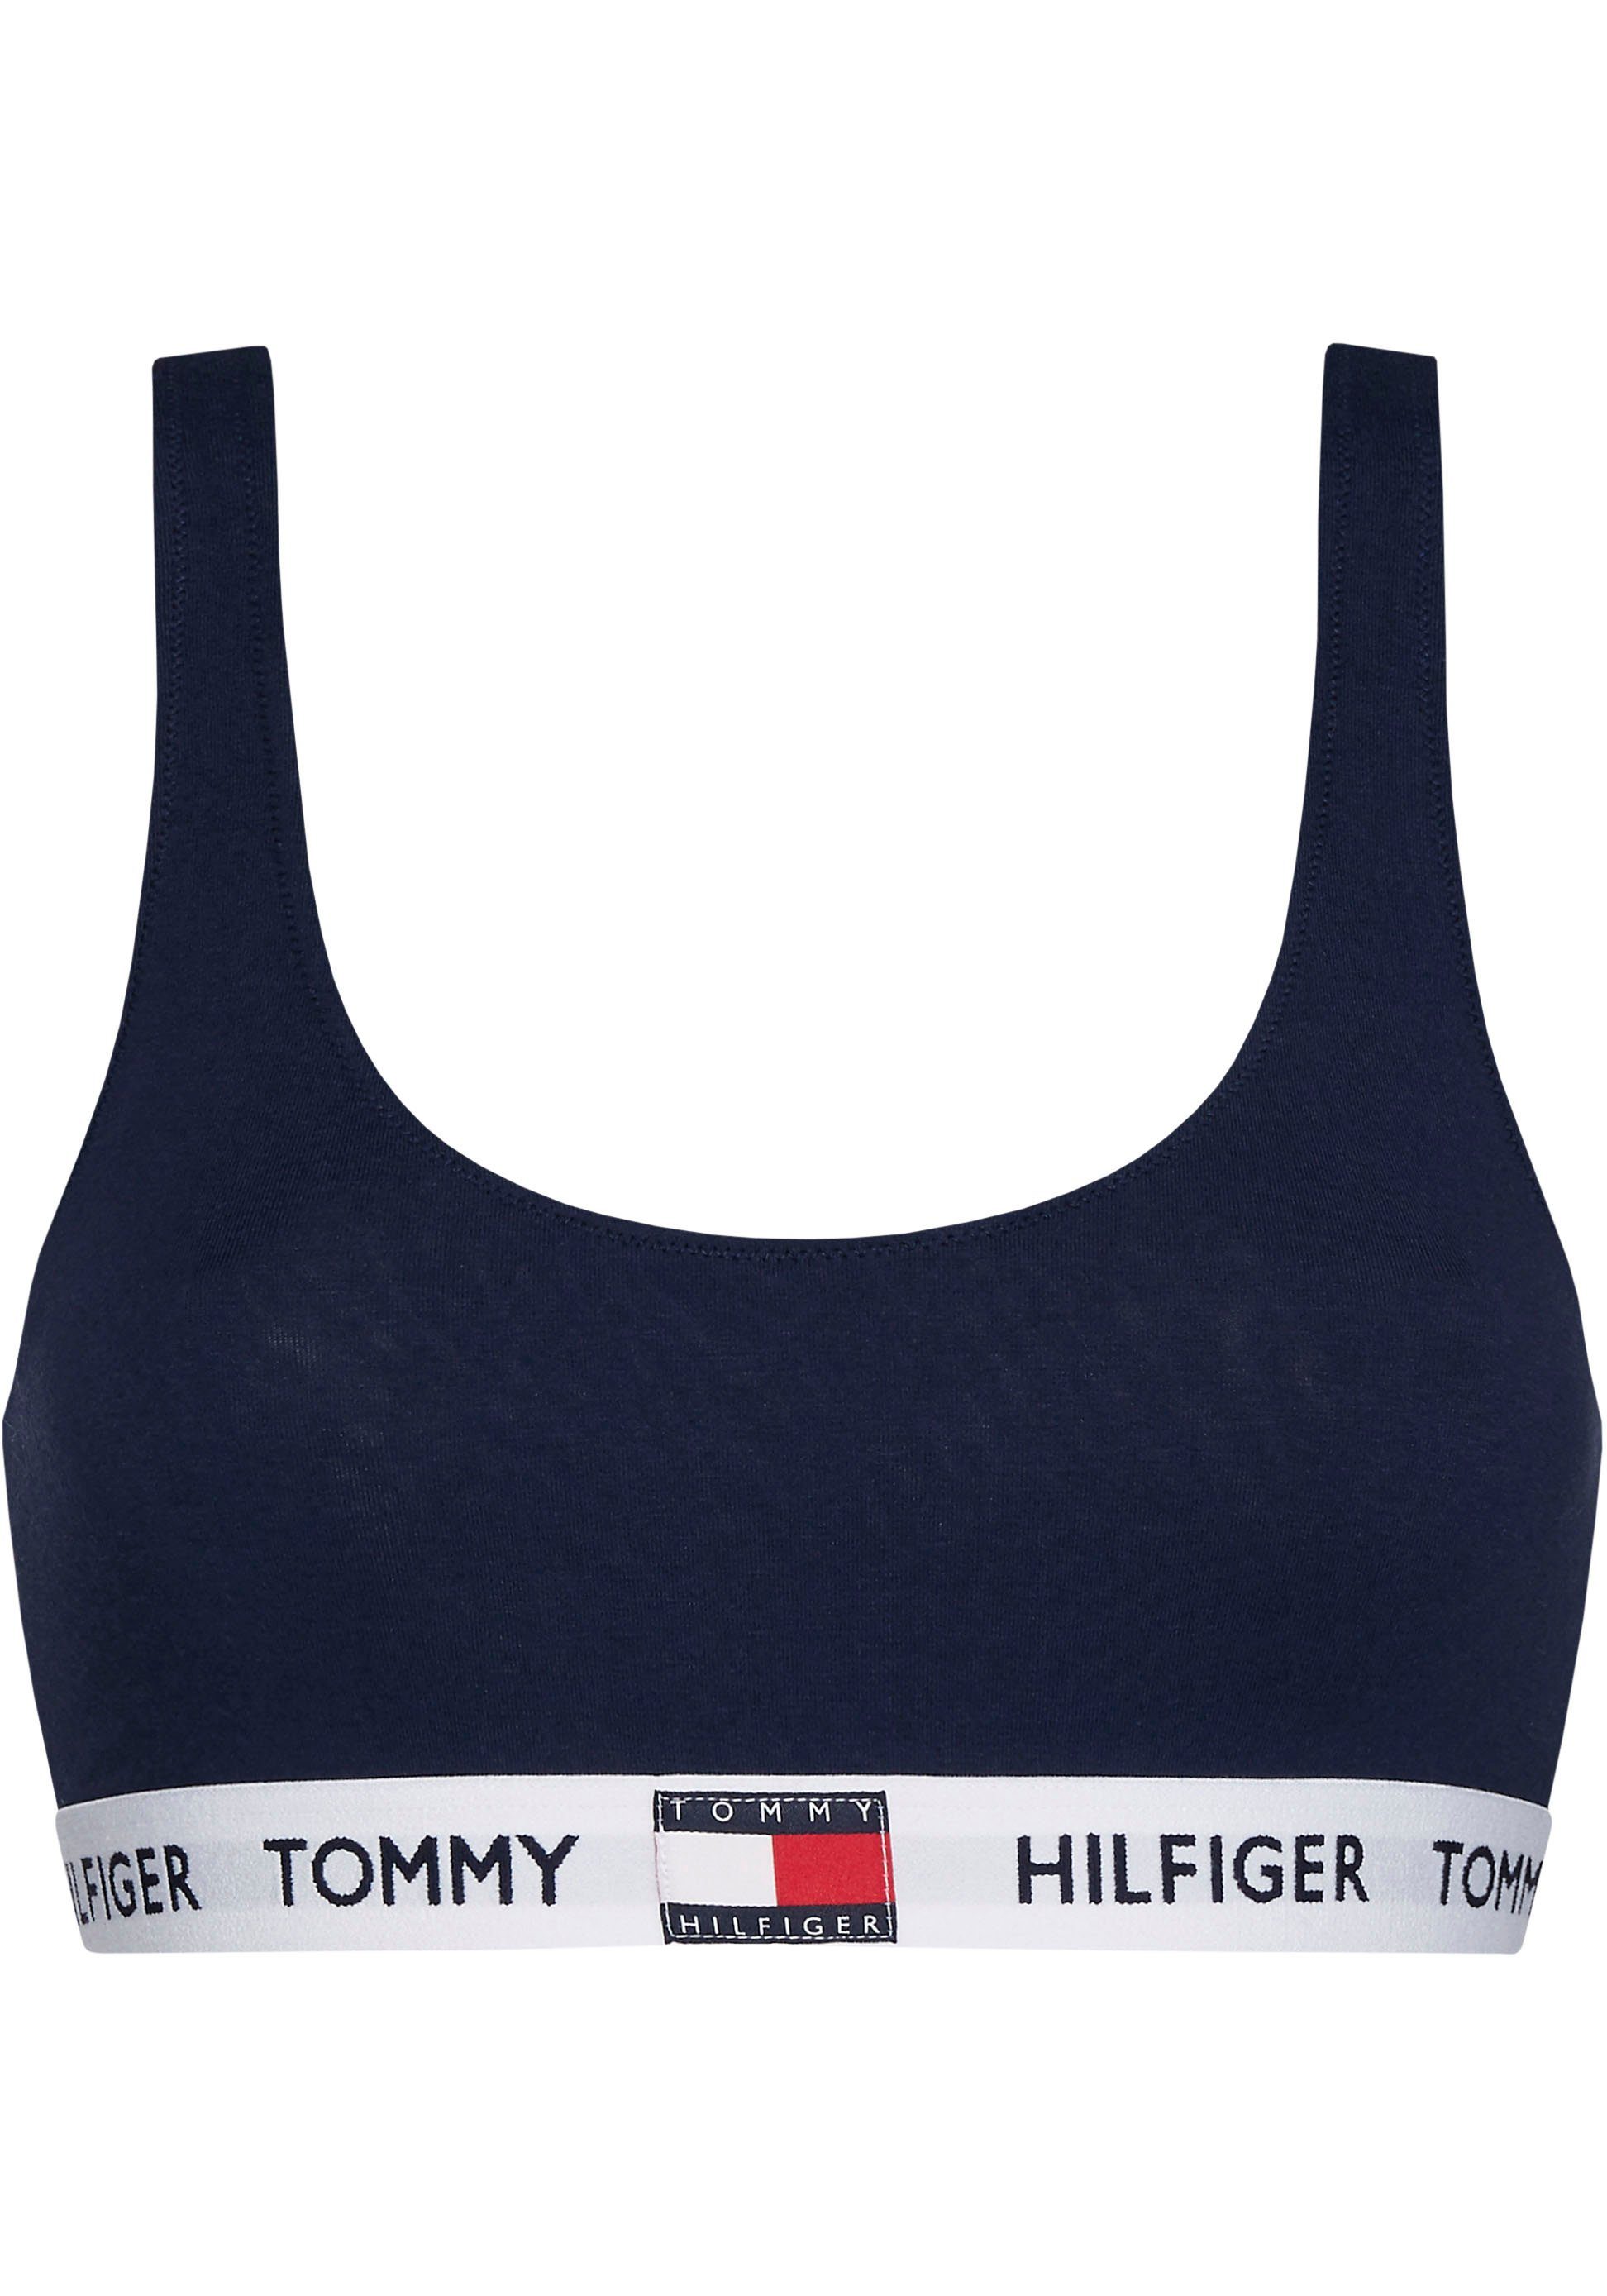 Tommy Hilfiger Underwear BRALETTE Logo-Schriftzug mit Tommy Bralette Hilfiger Navy Blazer